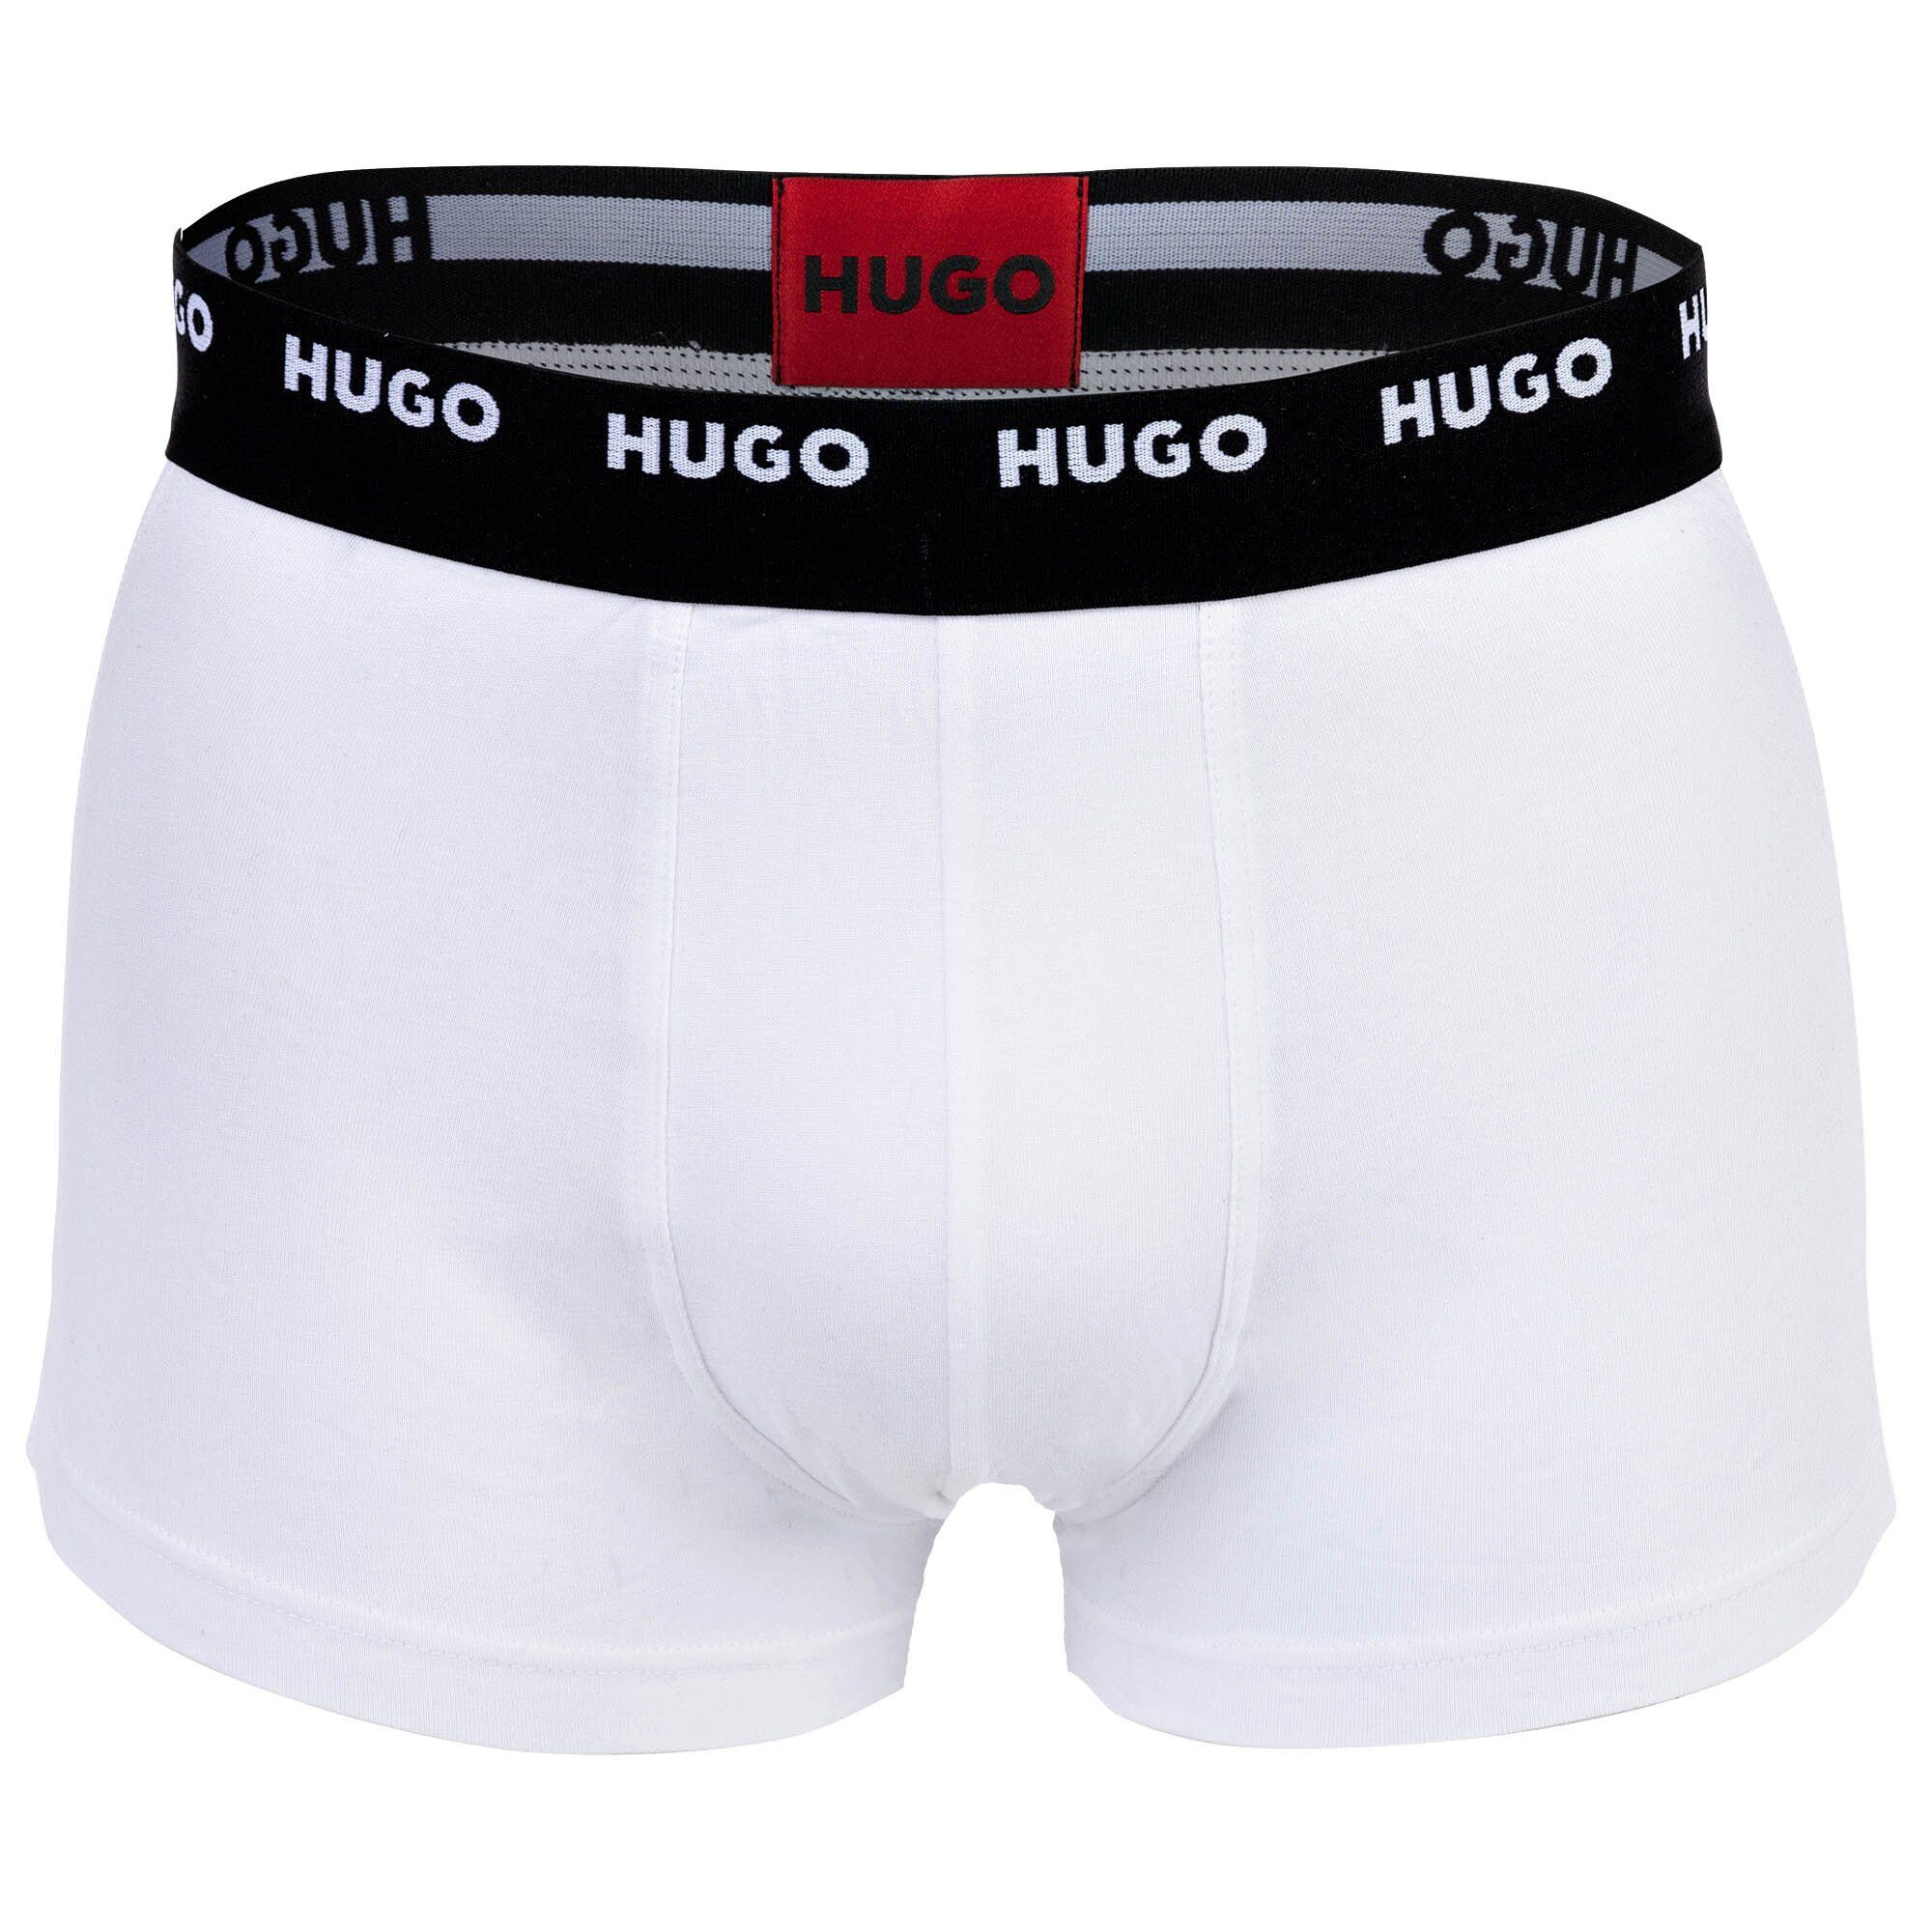 Schwarz/Rot/Blau Five Herren Boxer Pack Shorts, Boxer - HUGO Pack 5er Trunks